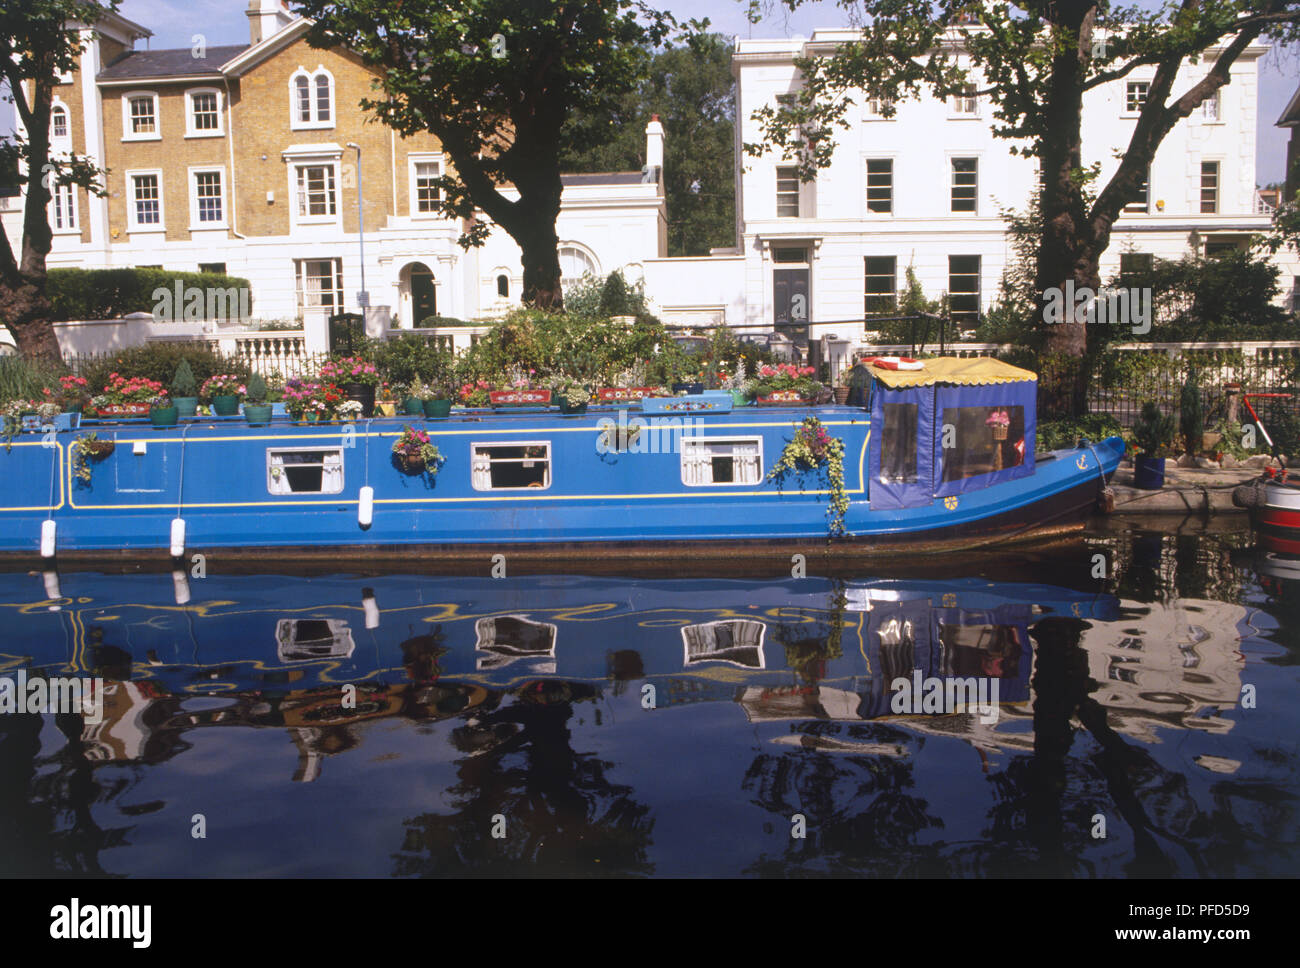 Vereinigtes Königreich, England, London, Regent's Canal, blau Hausboot im Wasser wider, bei der die Zeile der Edwardianischen Häuser im Hintergrund Stockfoto